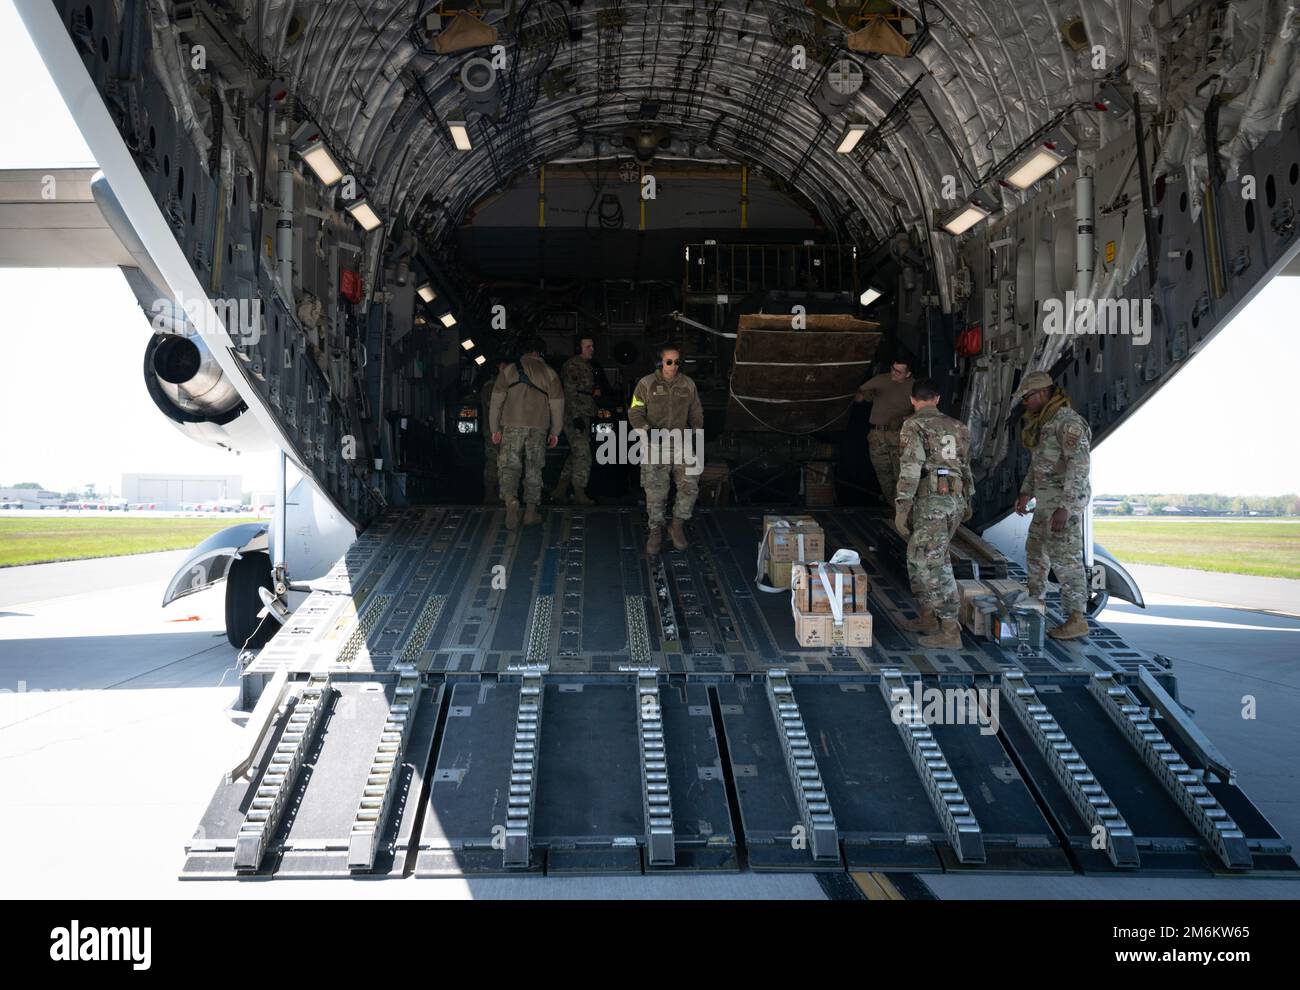 USA Flugzeuge, die dem 621. Noteinsatzflügel zugeteilt sind, beliefern einen C-17 Globemaster III vom 29. April 2022 in der Joint Base McGuire-Dix-Lakehurst, New Jersey. Die Airmen haben kürzlich im Rahmen eines Notfallteams die Ausrüstung zur Unterstützung der USA verlegt Operationen der Europäischen Kommandozentrale. Stockfoto